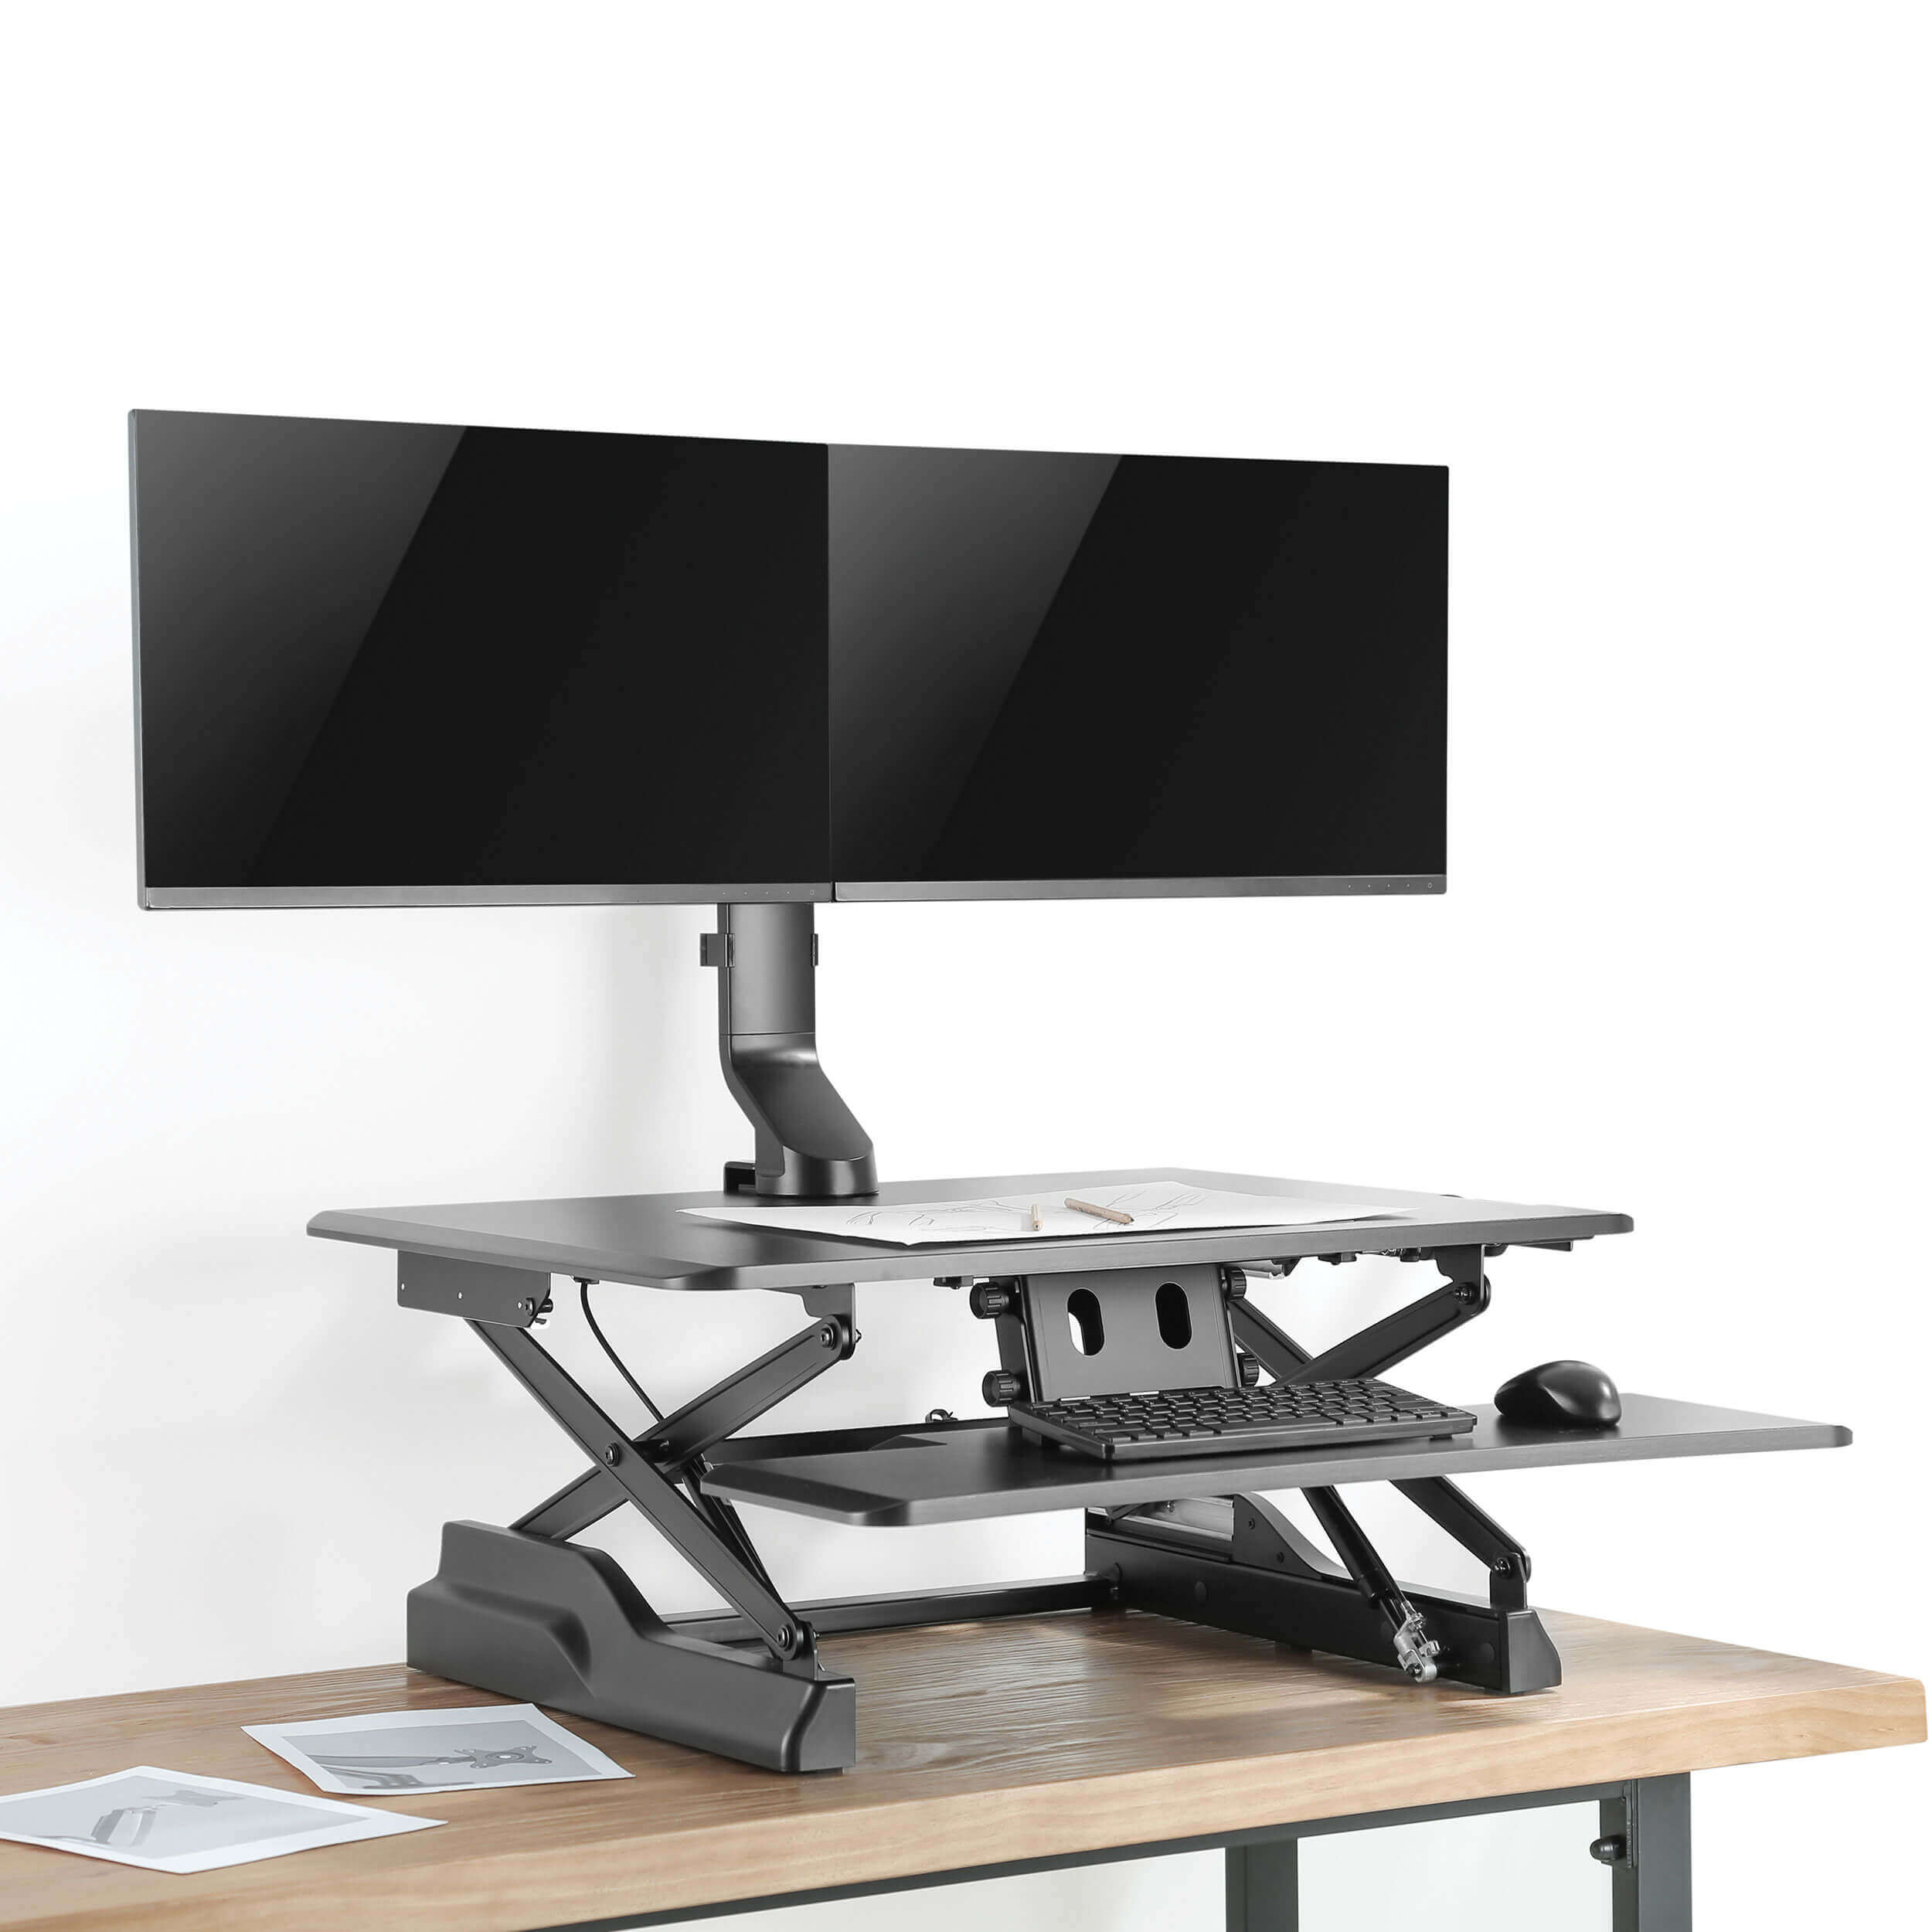 Tripplite Držiak pre montáž monitora na stôl, nastaviteľná výška, pre 2x 17"…32" monitory 